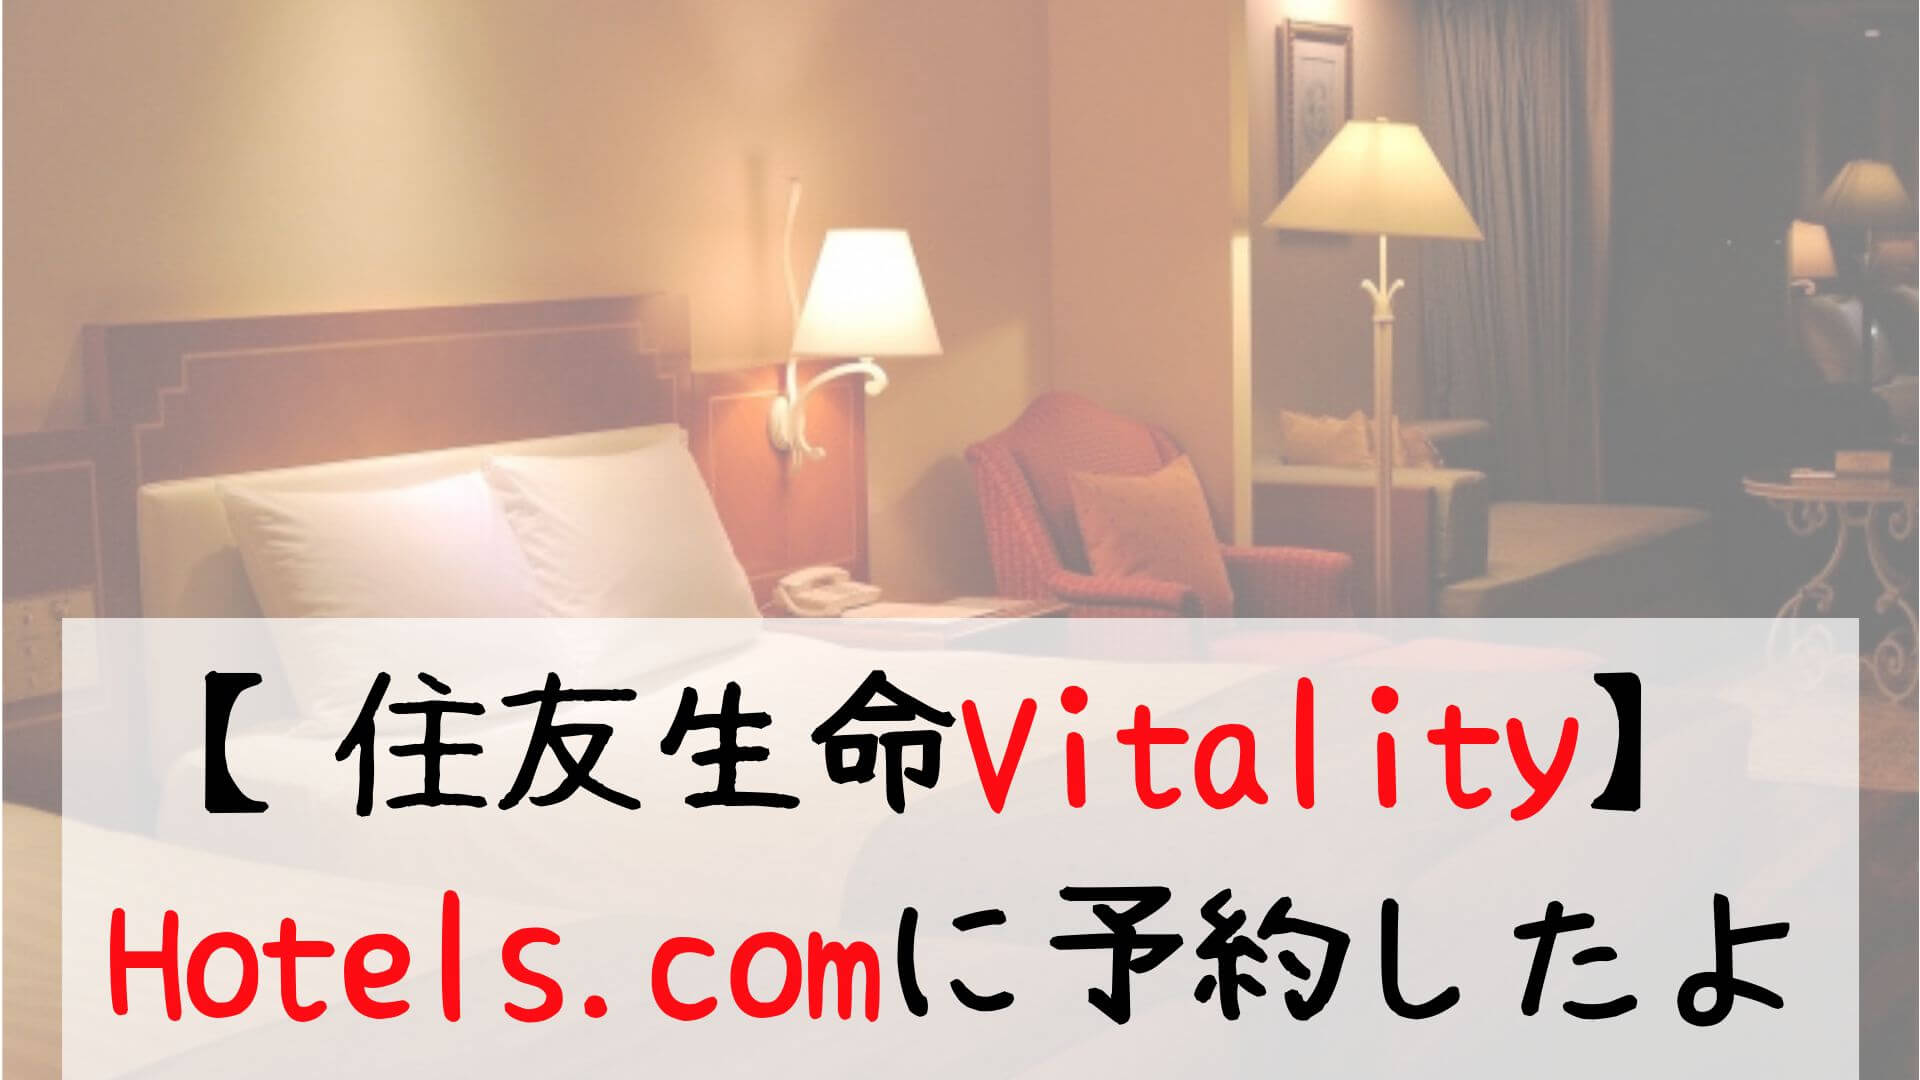 【住友生命Vitality】 Hotels.comに予約したよ